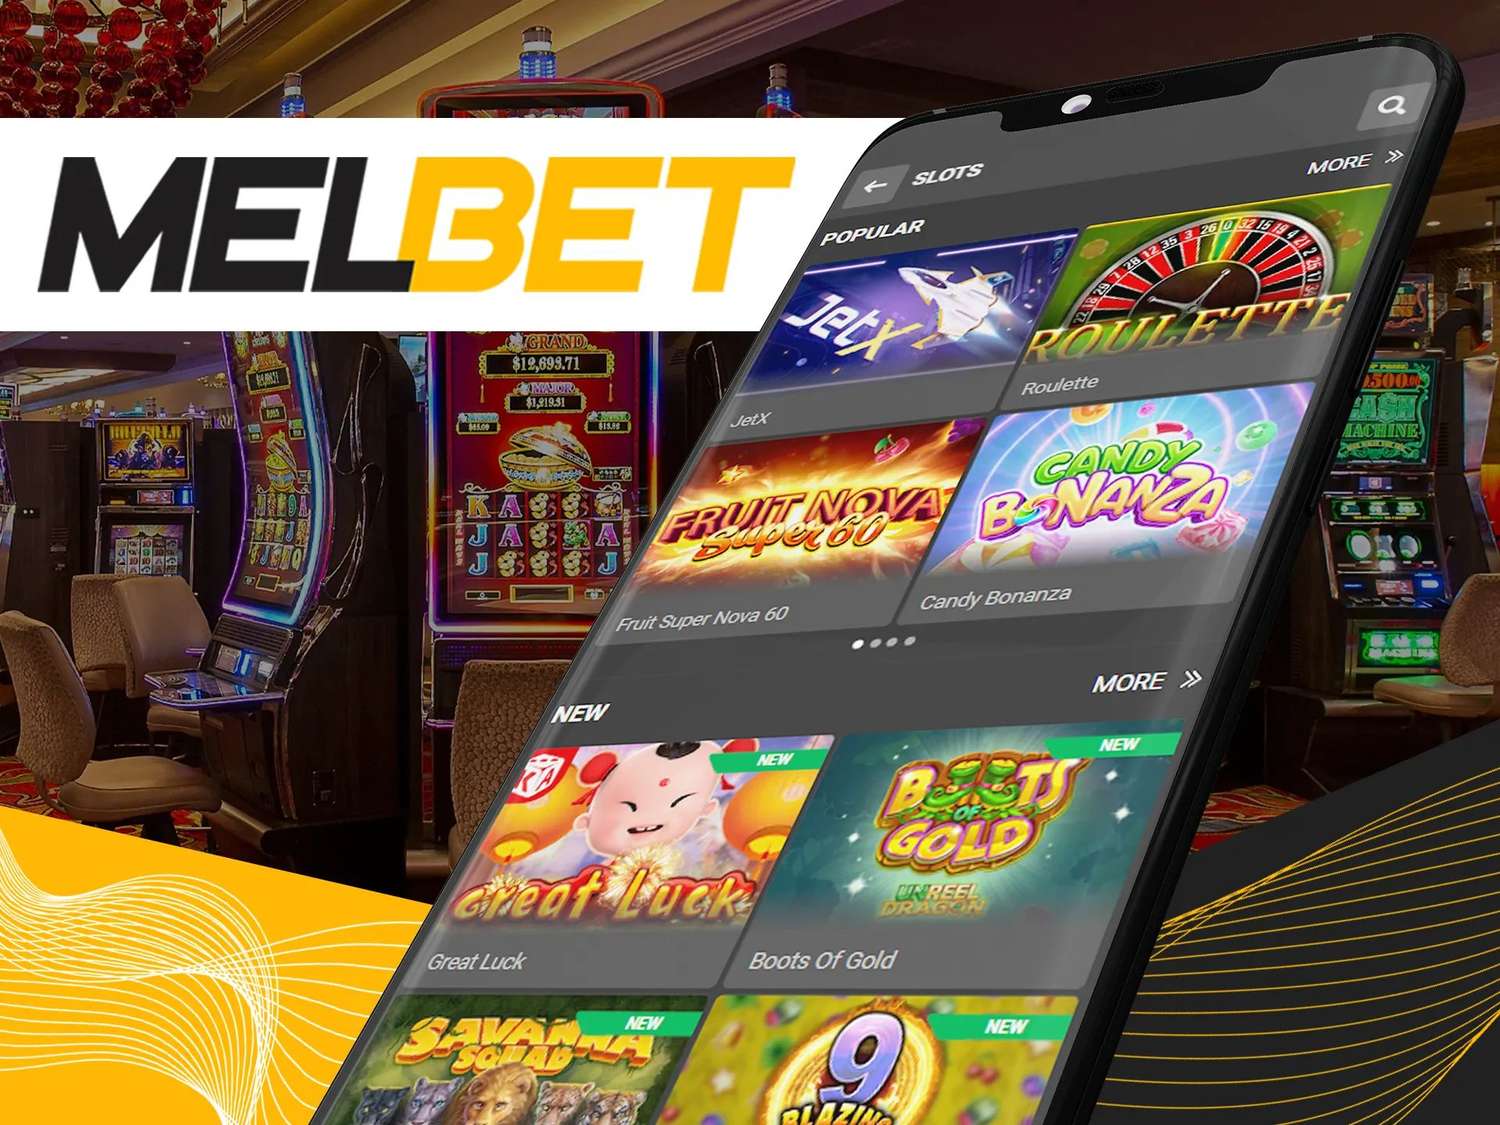 Melbet games – juega y gana con los premios de la empresa